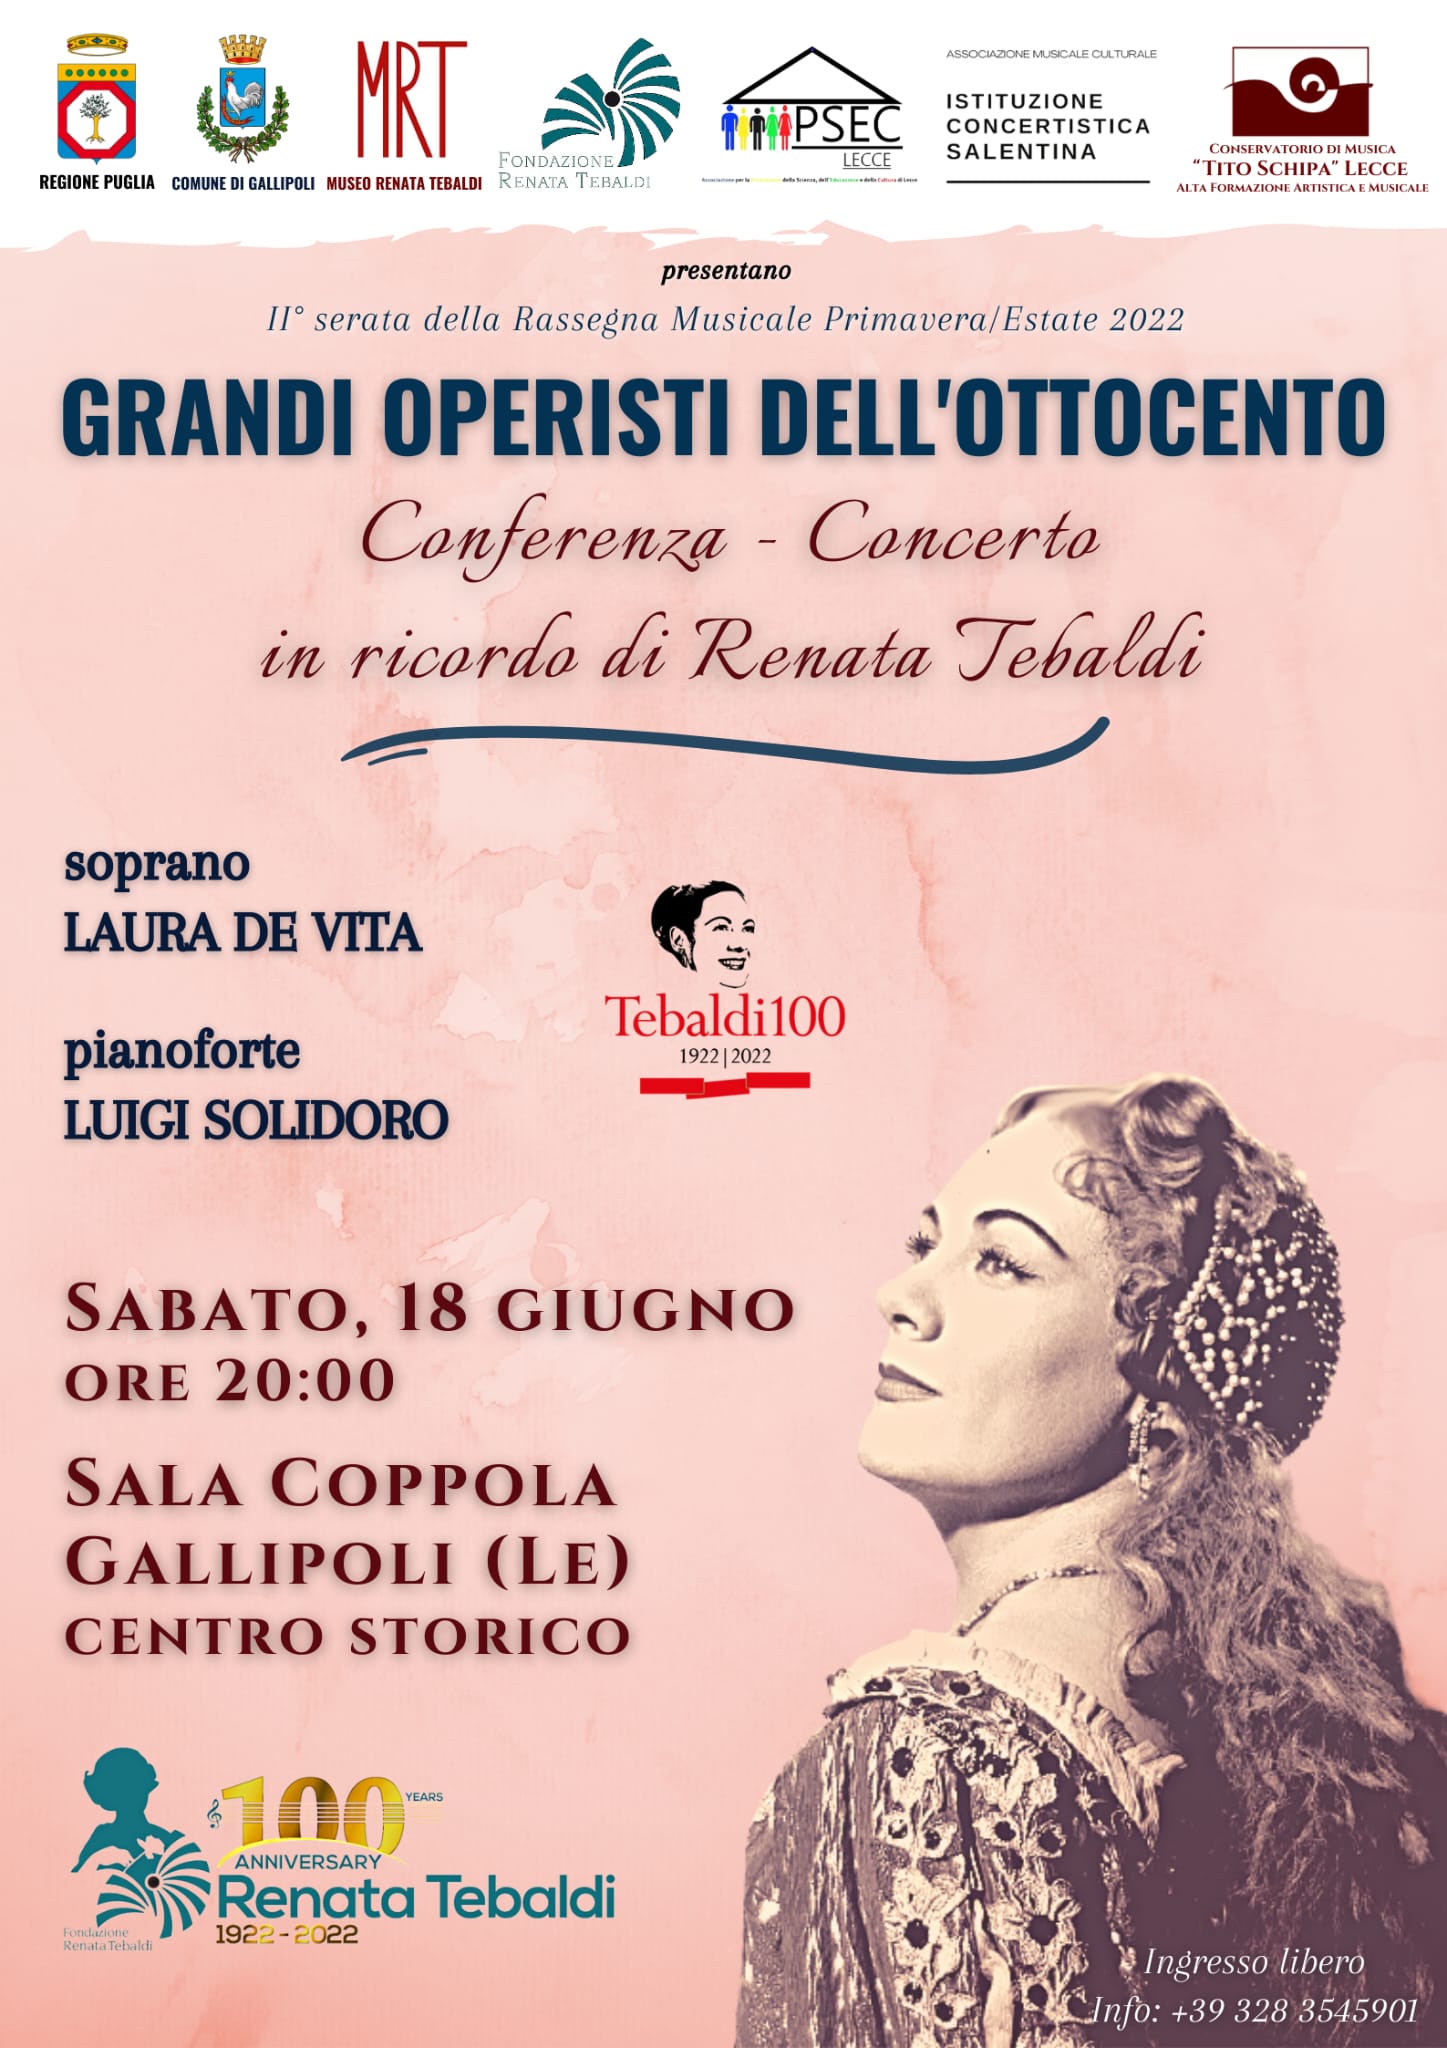 Locandina della Conferenza-Concerto per il Centenario Renata Tebaldi a Gallipoli a cura del maestro Luigi Solidoro.